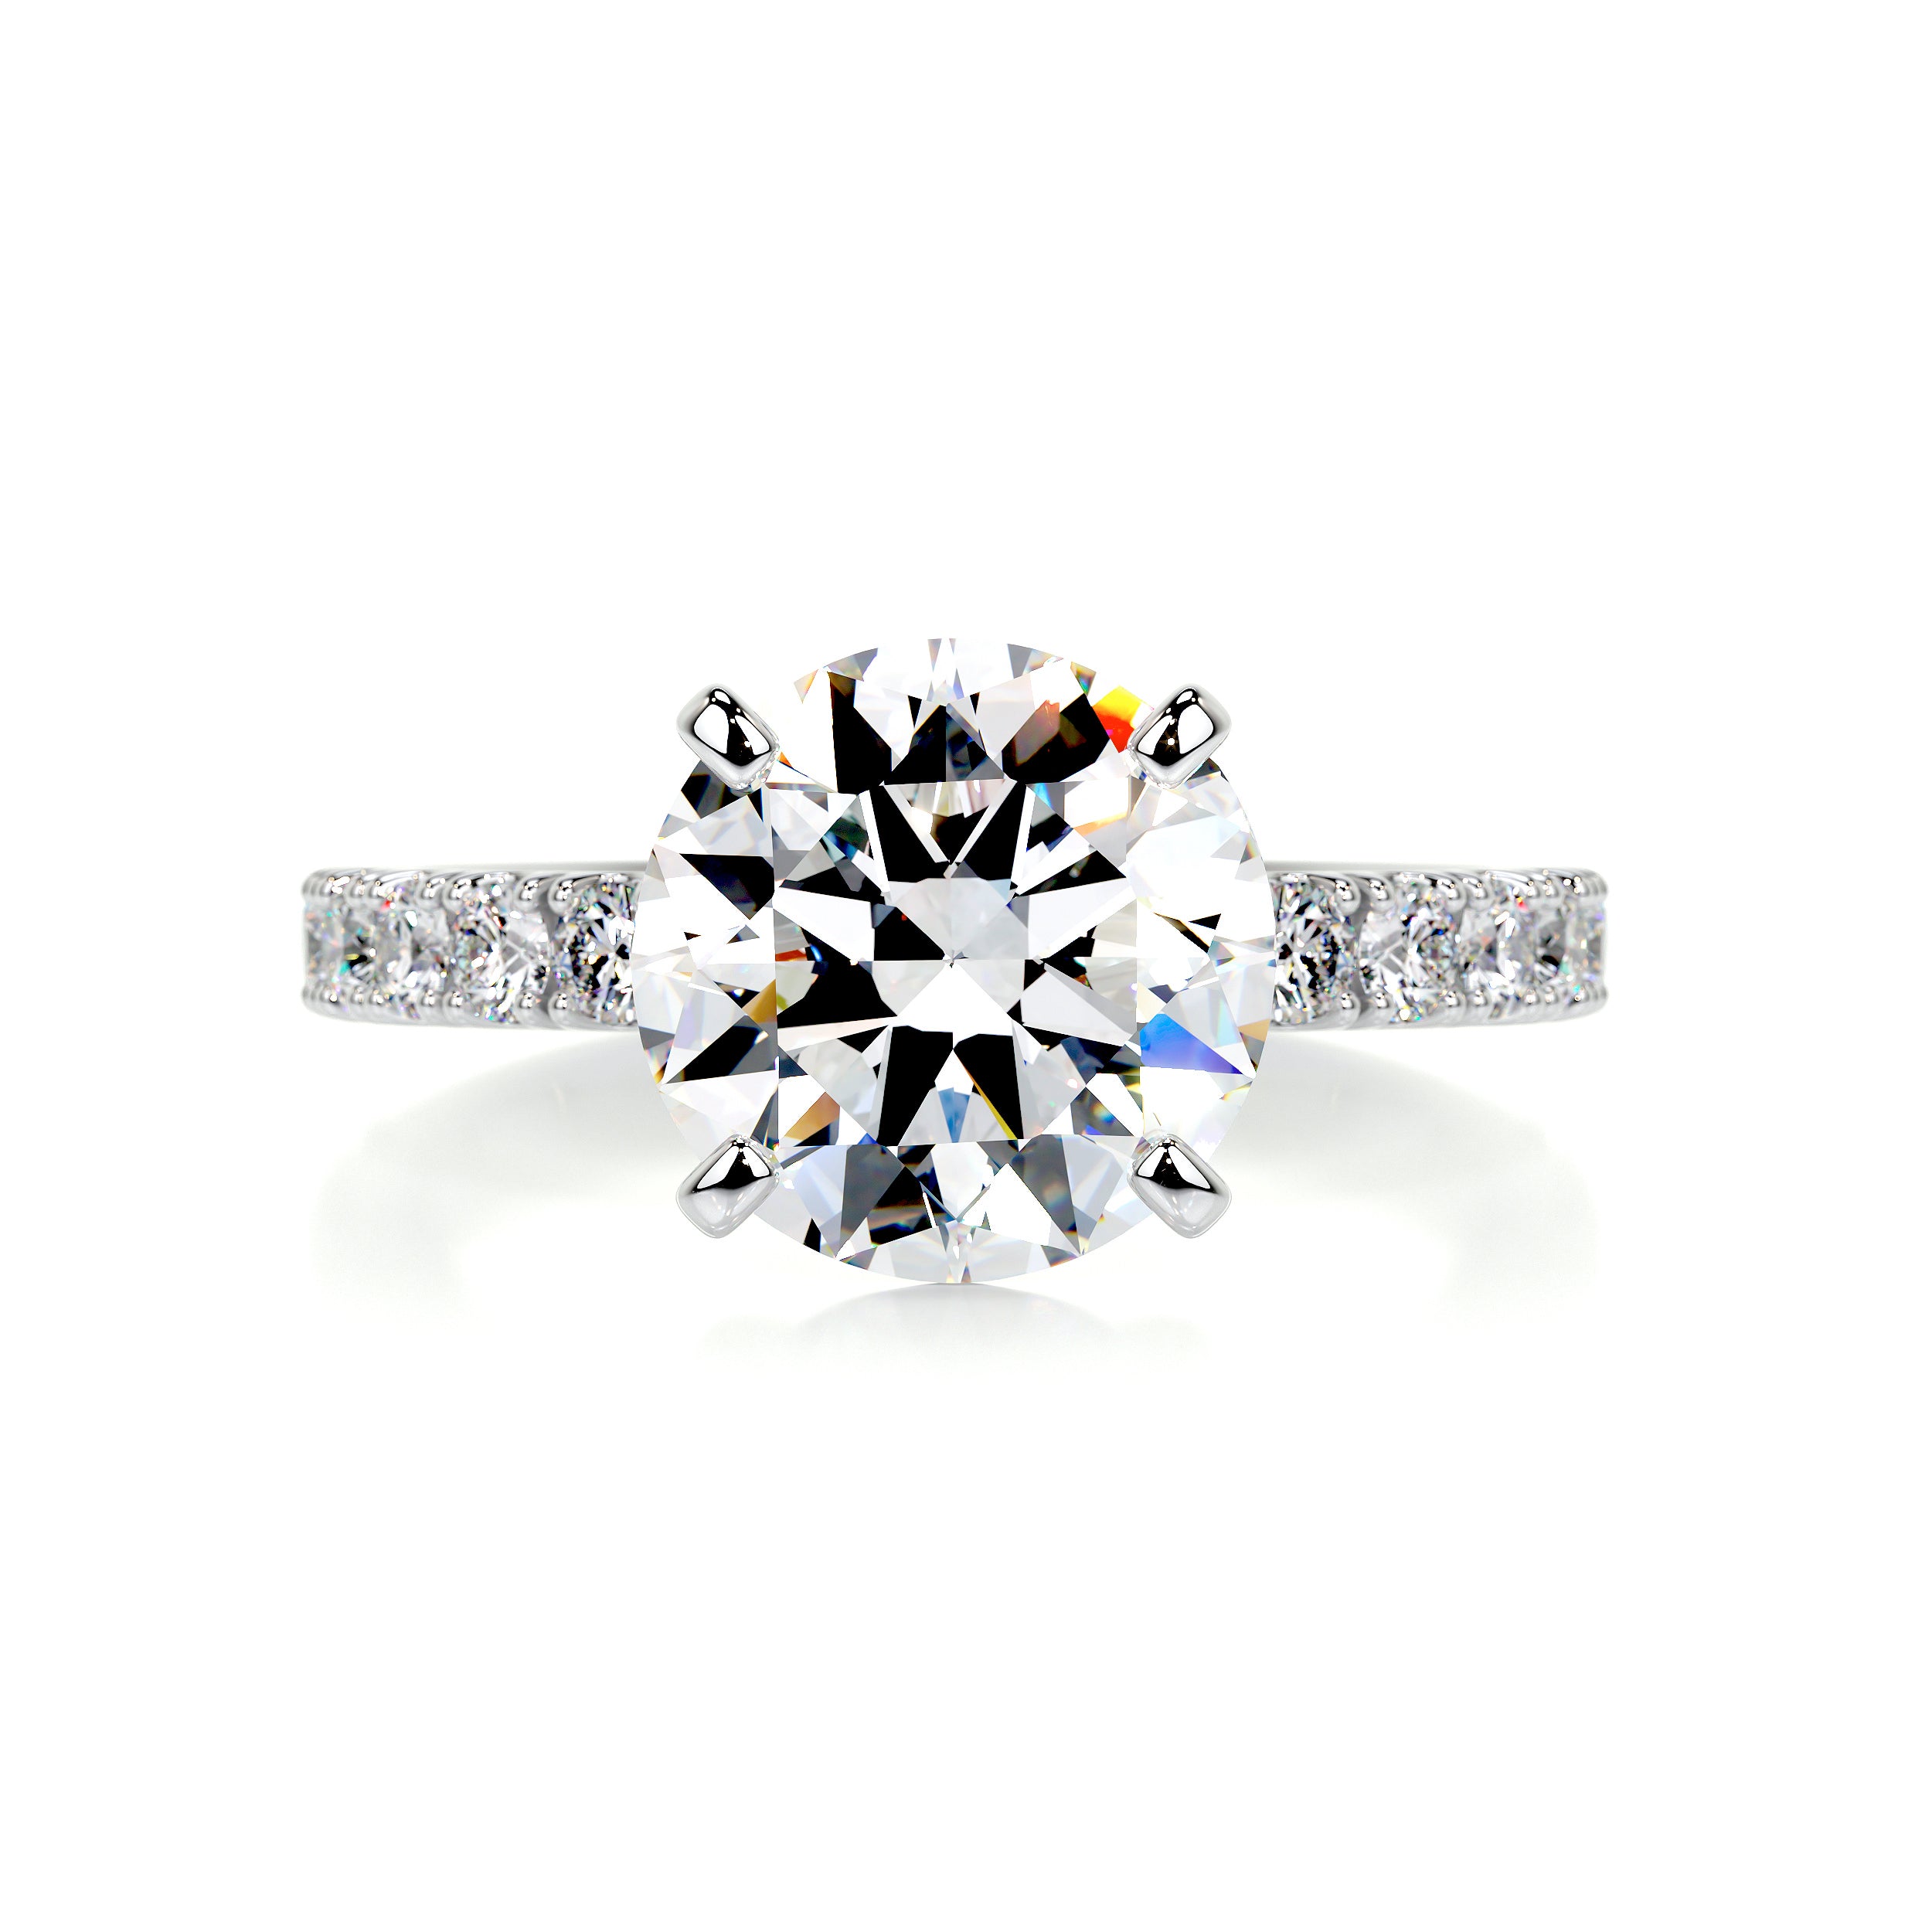 Alison Moissanite & Diamonds Ring   (3.62 Carat) -Platinum